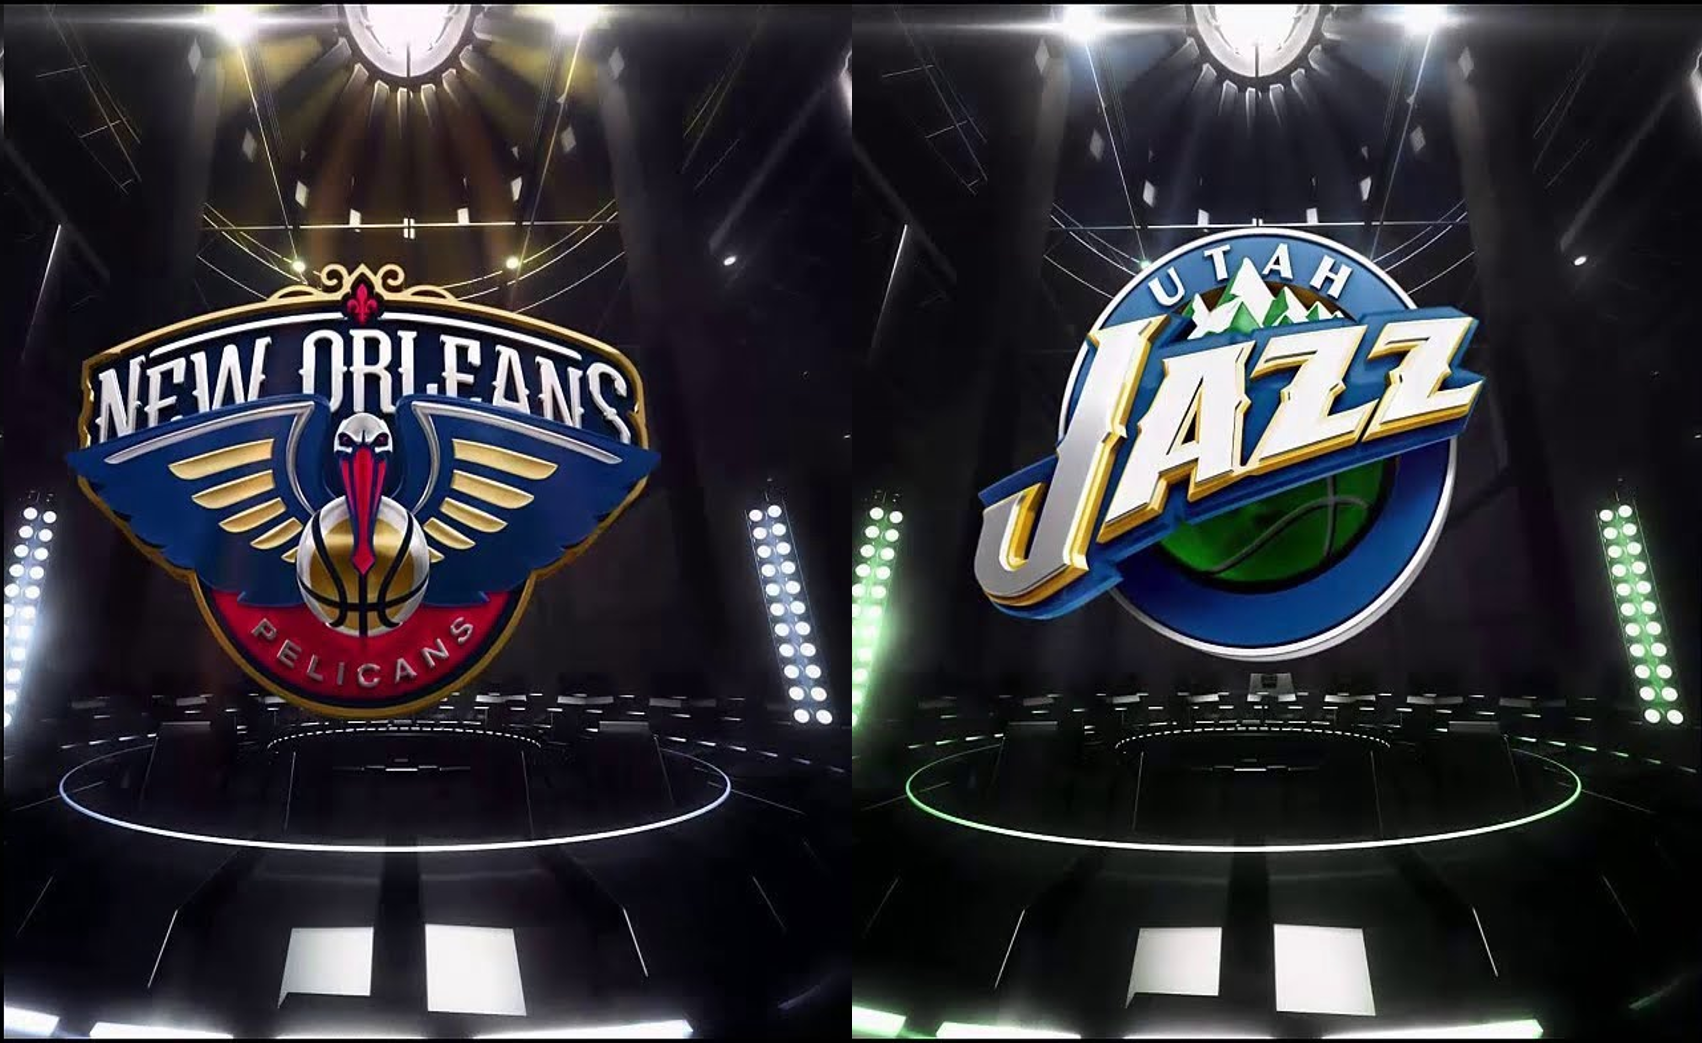 Pelicans Vs Utah Jazz